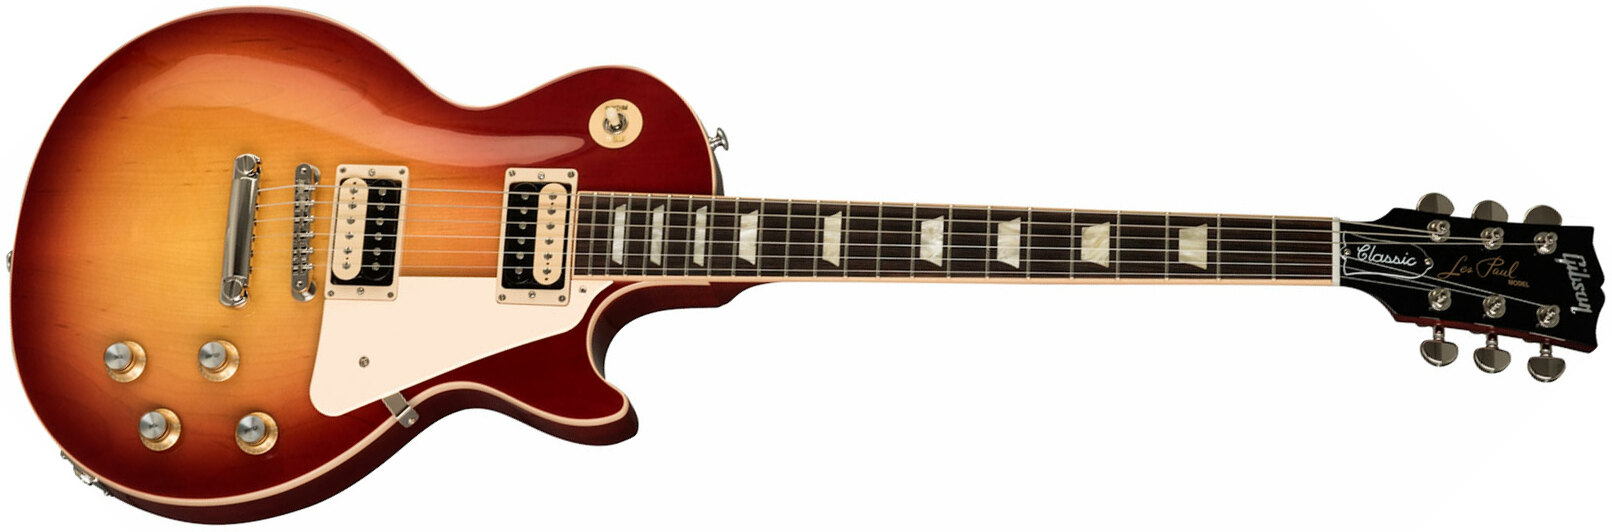 Gibson Les Paul Classic Modern 2019 2h Ht Rw - Heritage Cherry Sunburst - Guitare Électrique Single Cut - Main picture